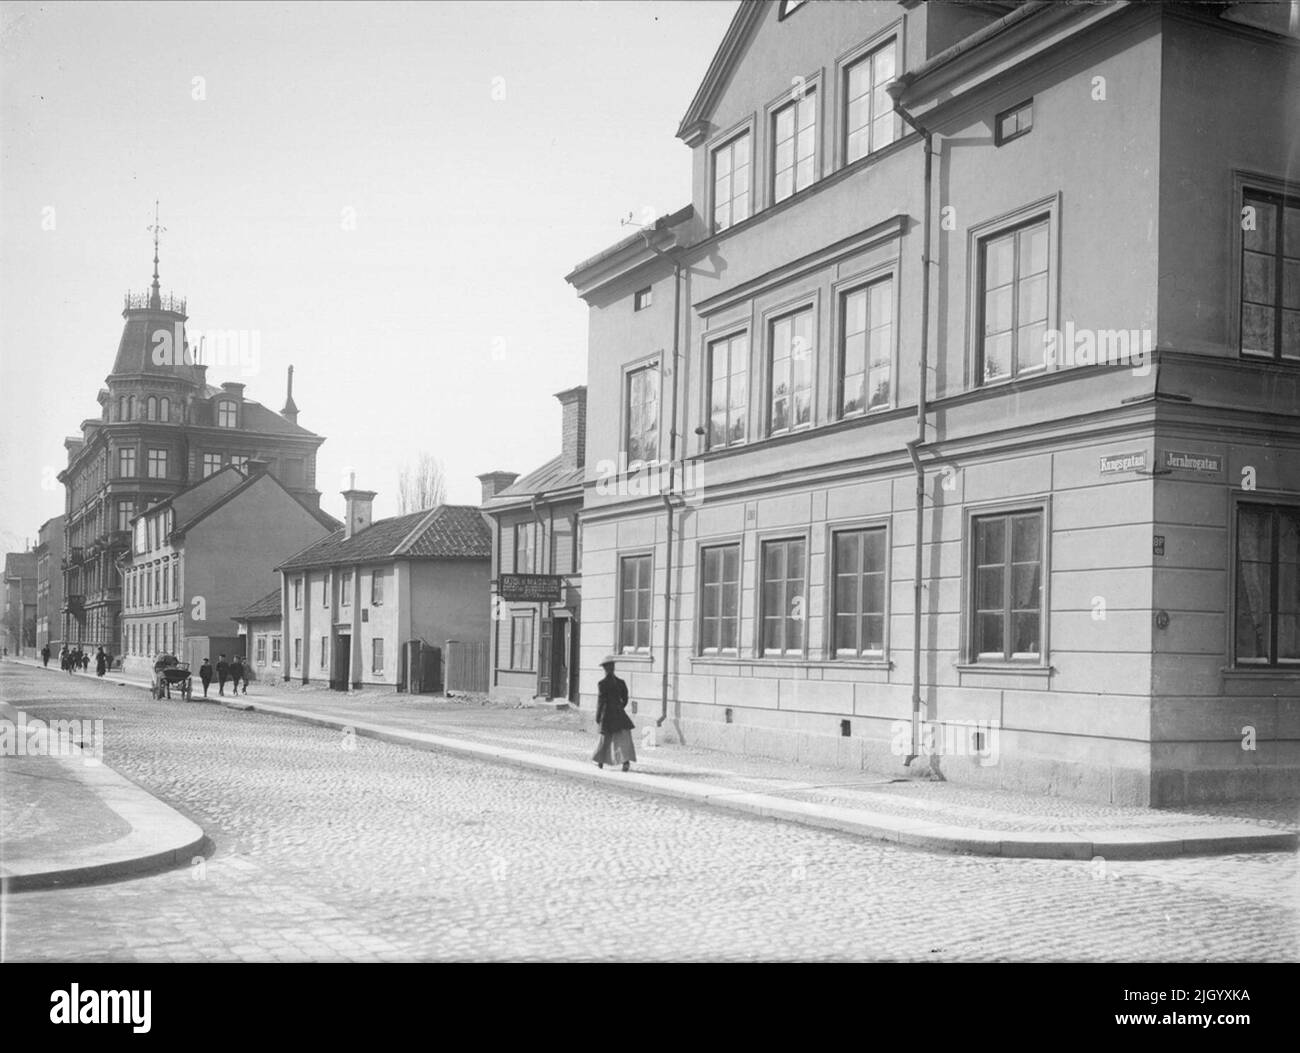 Kungsgatan à l'intersection avec St. Olofsgatan, Uppsala 1901 - 1902. Kungsgatan à l'intersection avec St. Olofsgatan, Uppsala 1901 - 1902 Banque D'Images